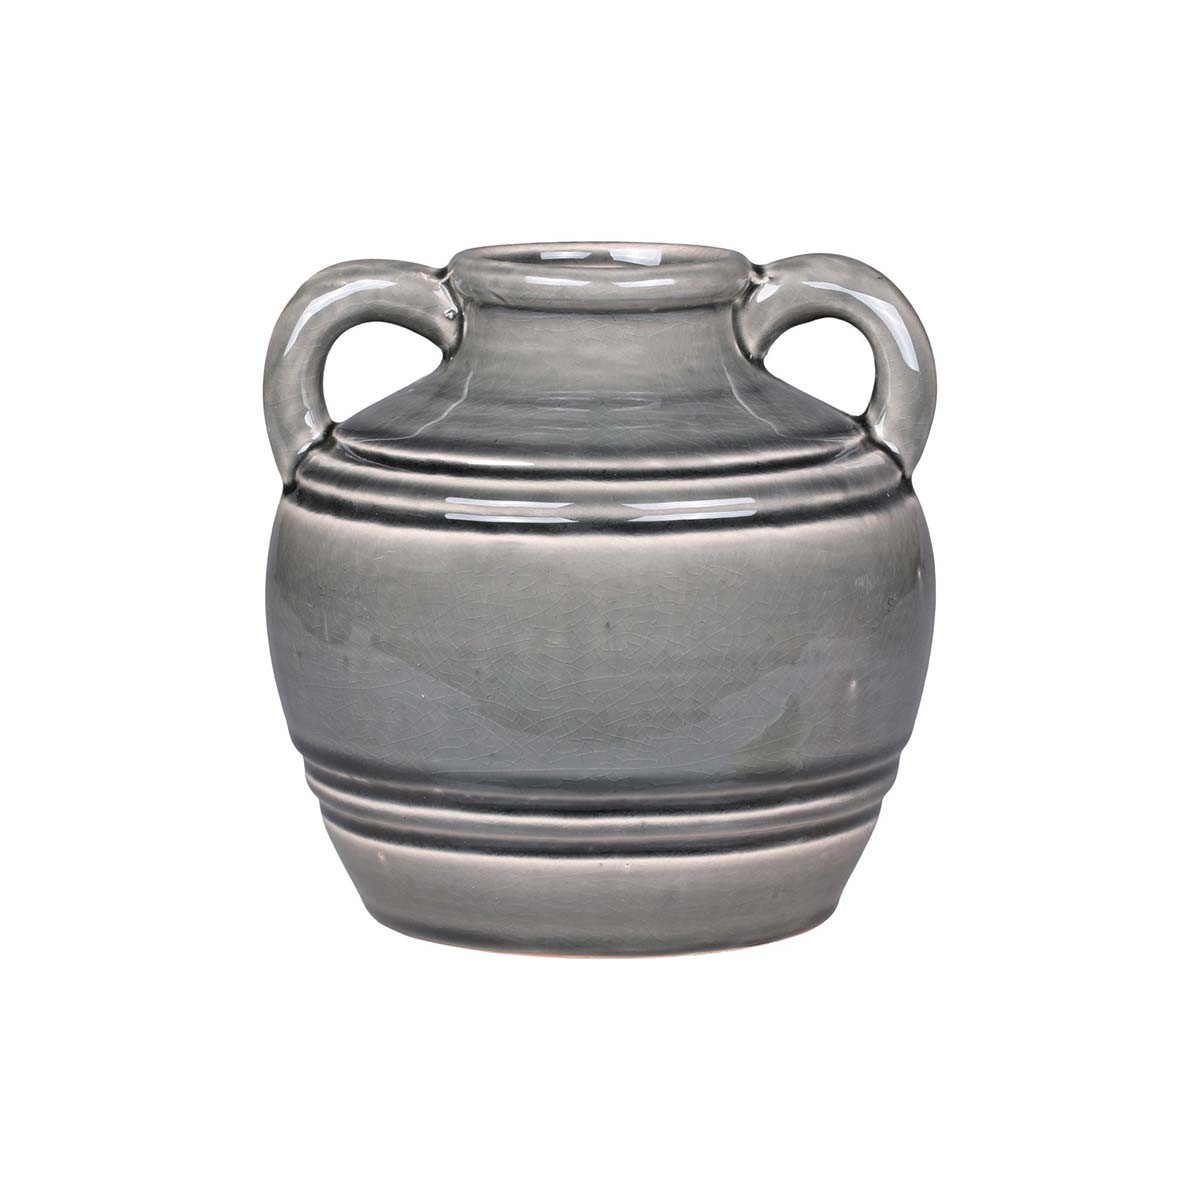 Vase cruche en céramique gris clair avec poignées